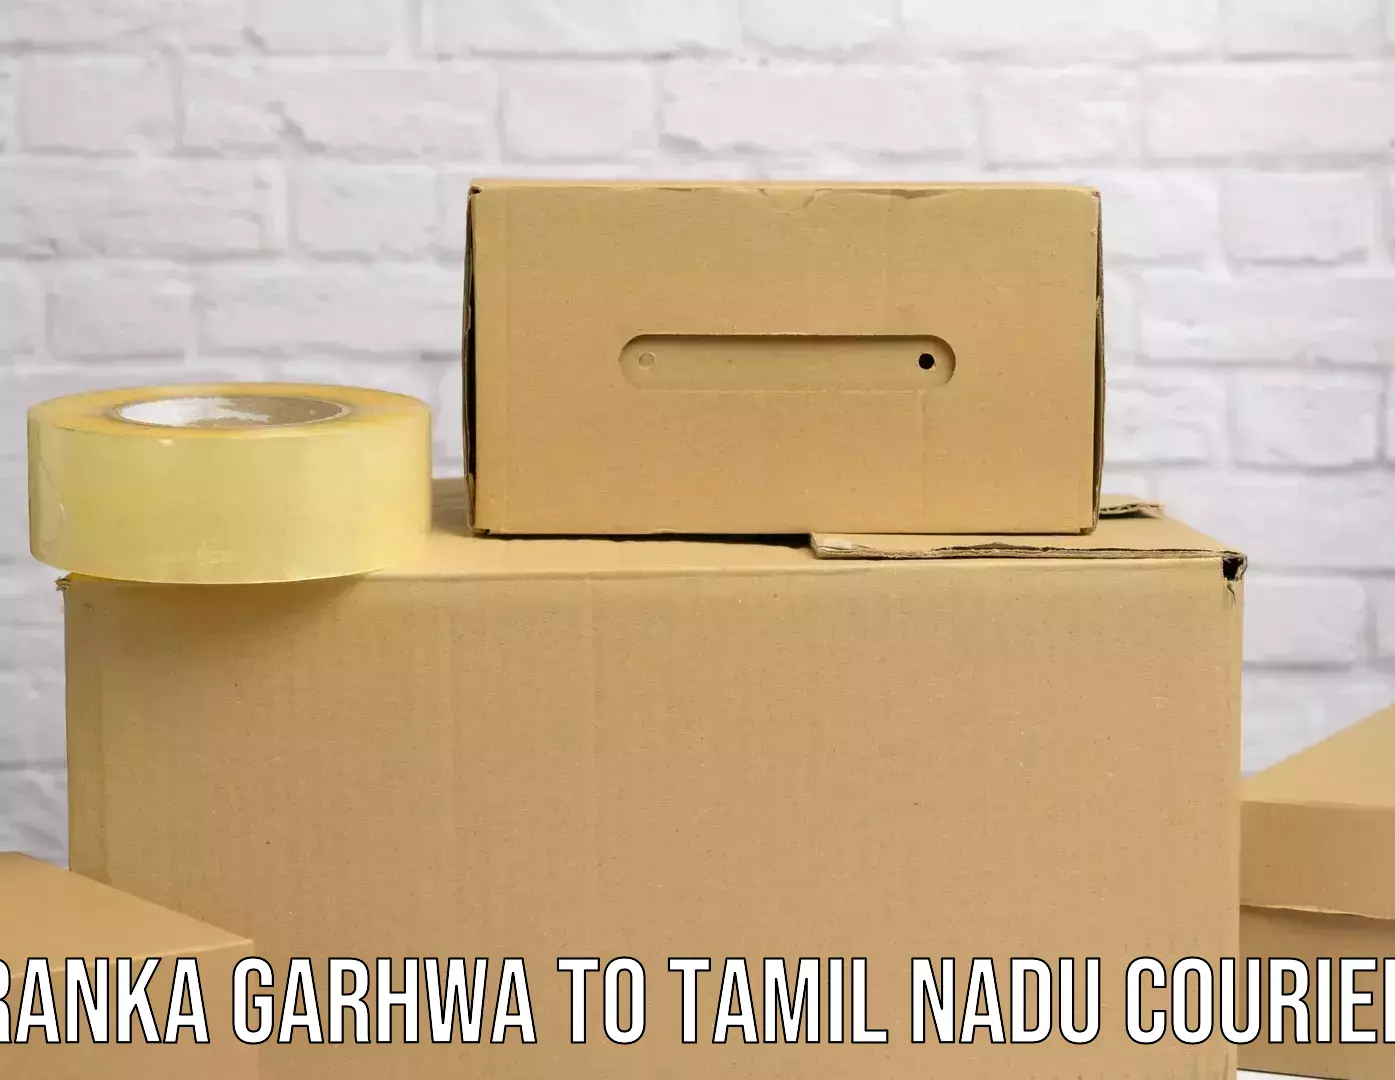 Modern parcel services Ranka Garhwa to Tindivanam